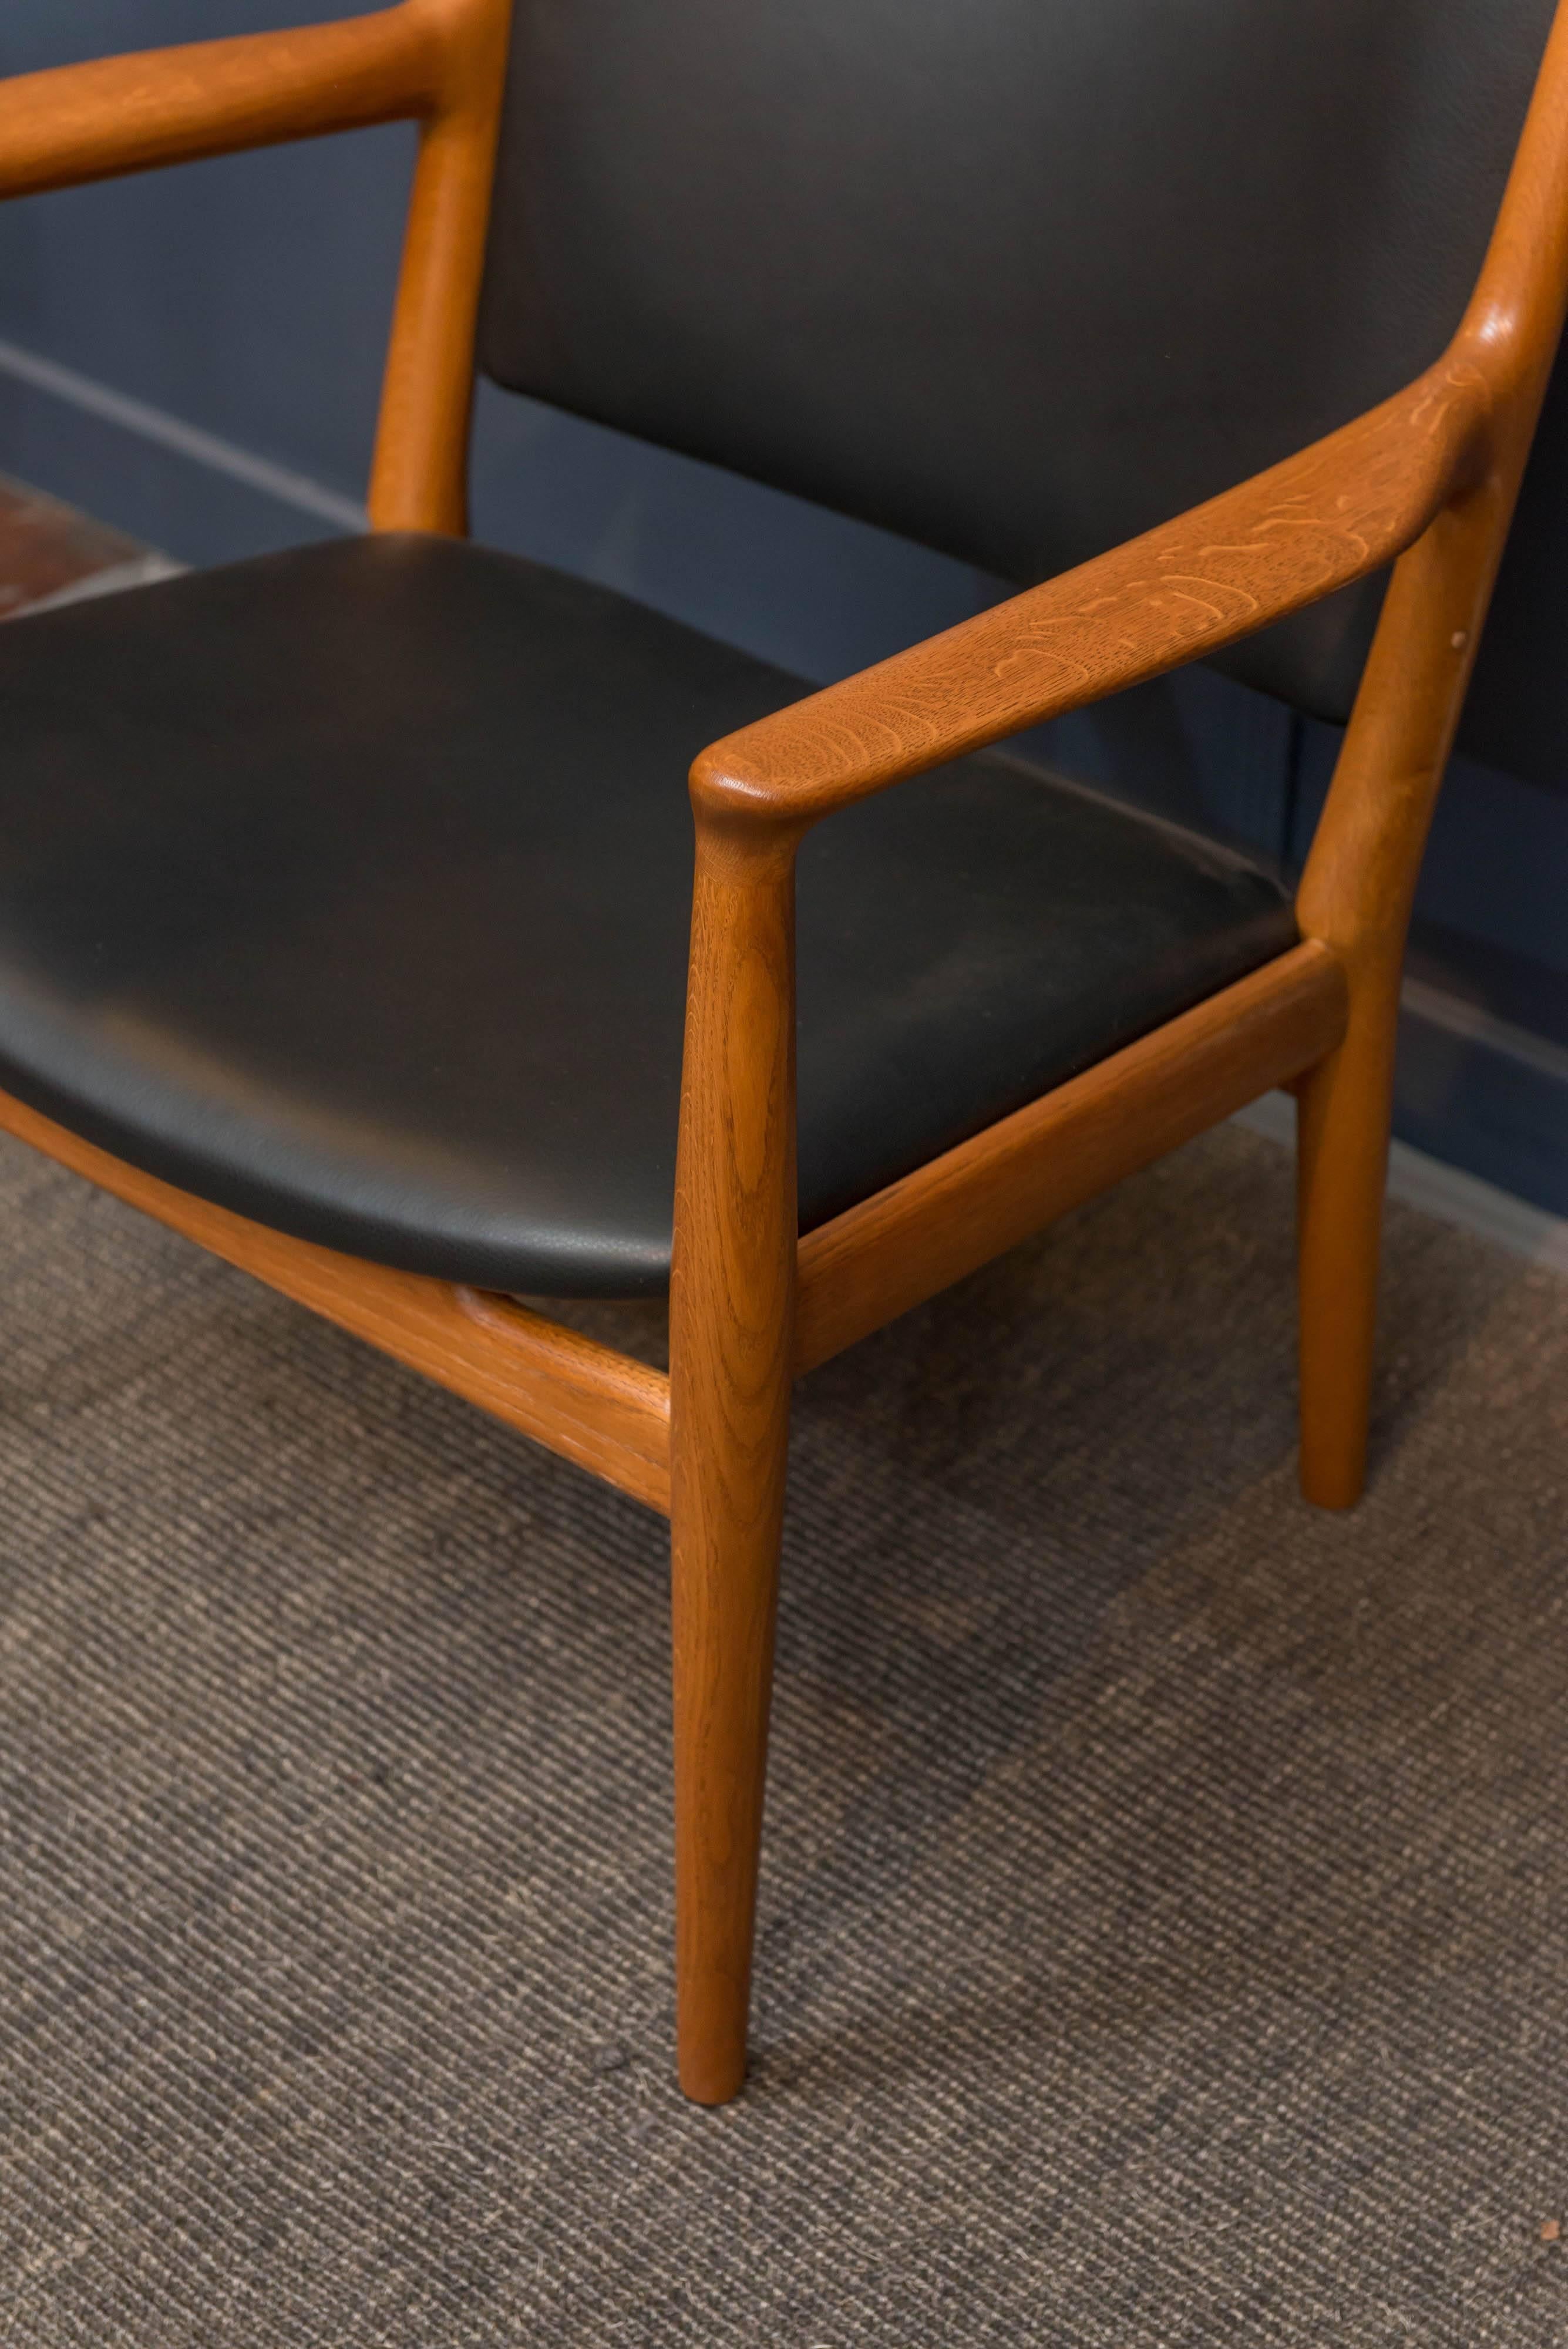 Hans J. Wegner Design Sessel aus Eiche und Teakholz Modell JH-713 für Johannes Hansen, Dänemark.
Schlichte Eleganz in Verbindung mit hochwertiger Konstruktion und Restaurierung machen ihn zum perfekten, robusten Loungesessel. 
Neue